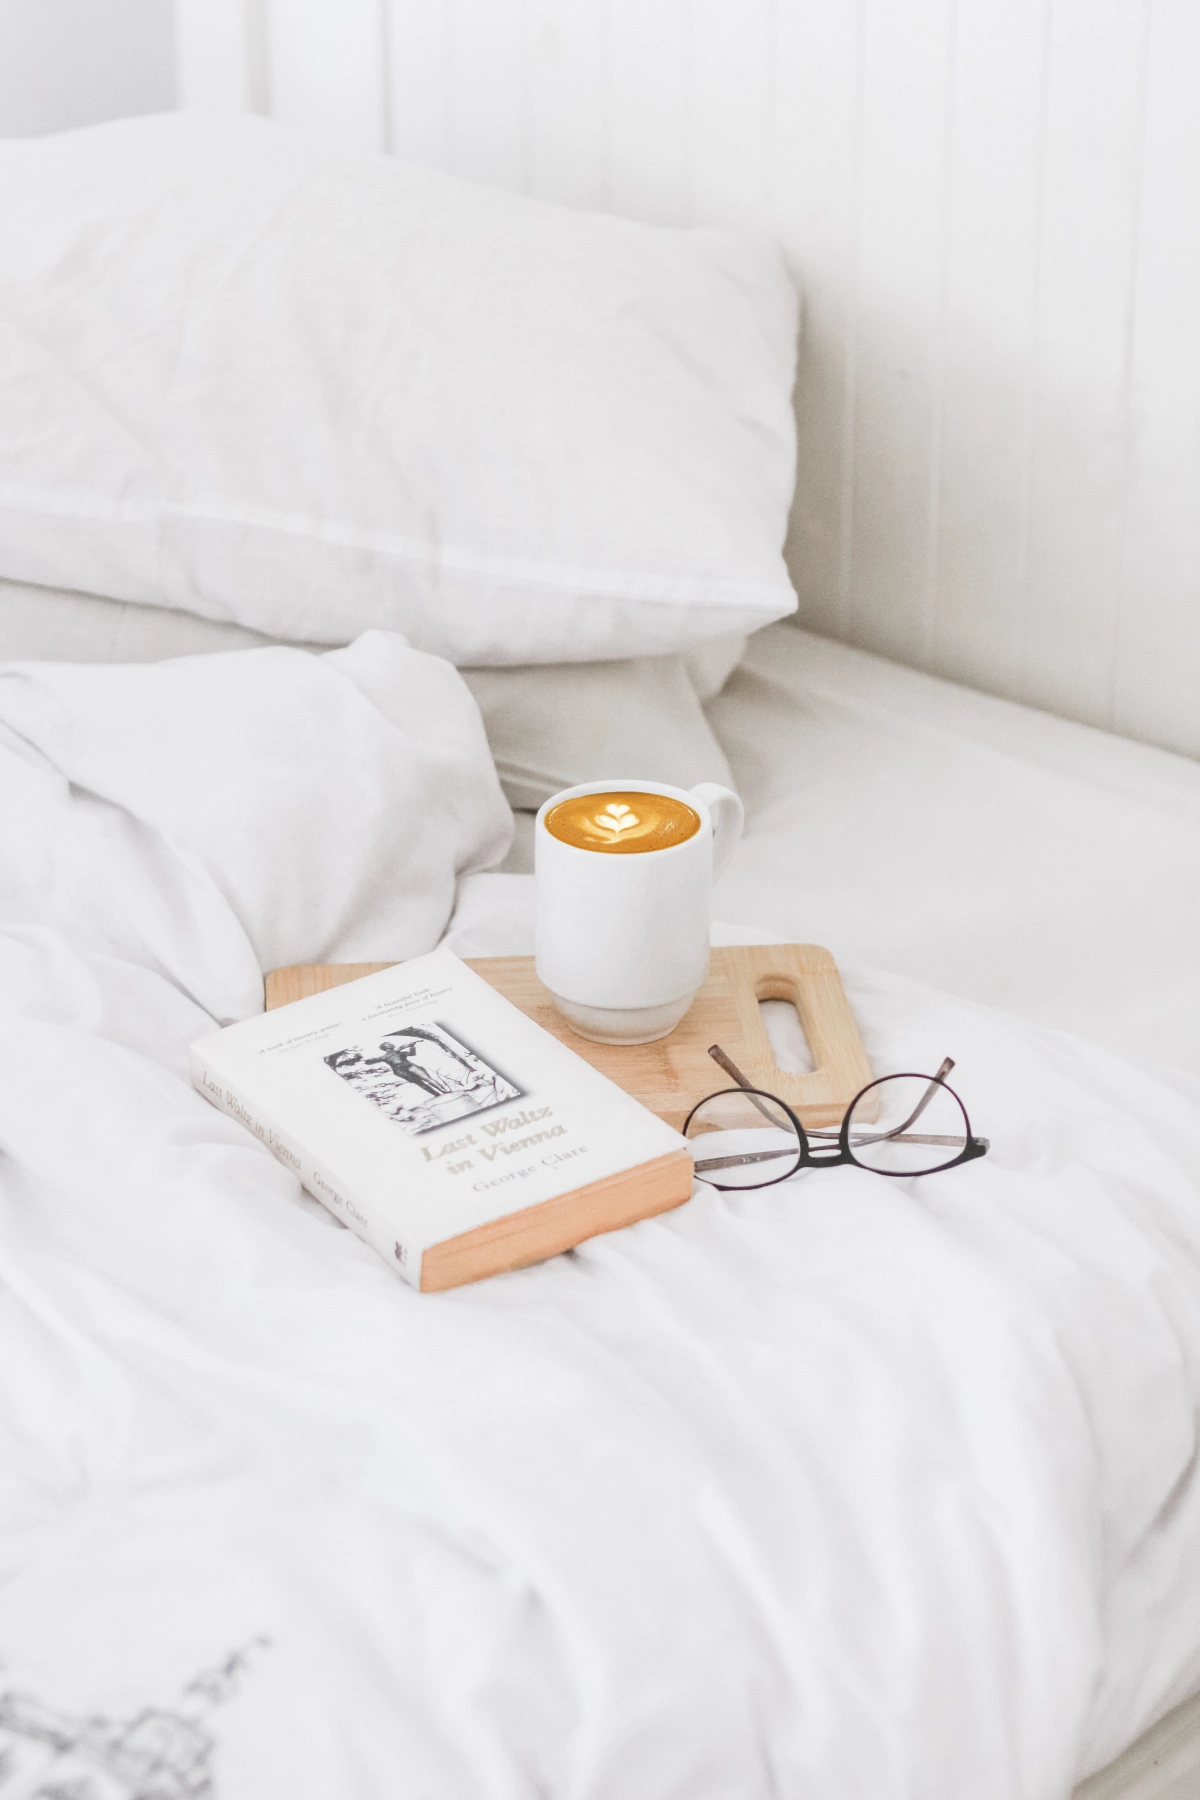 lit blanc draps planche decouper bois tasse cafe livre lunettes de vue